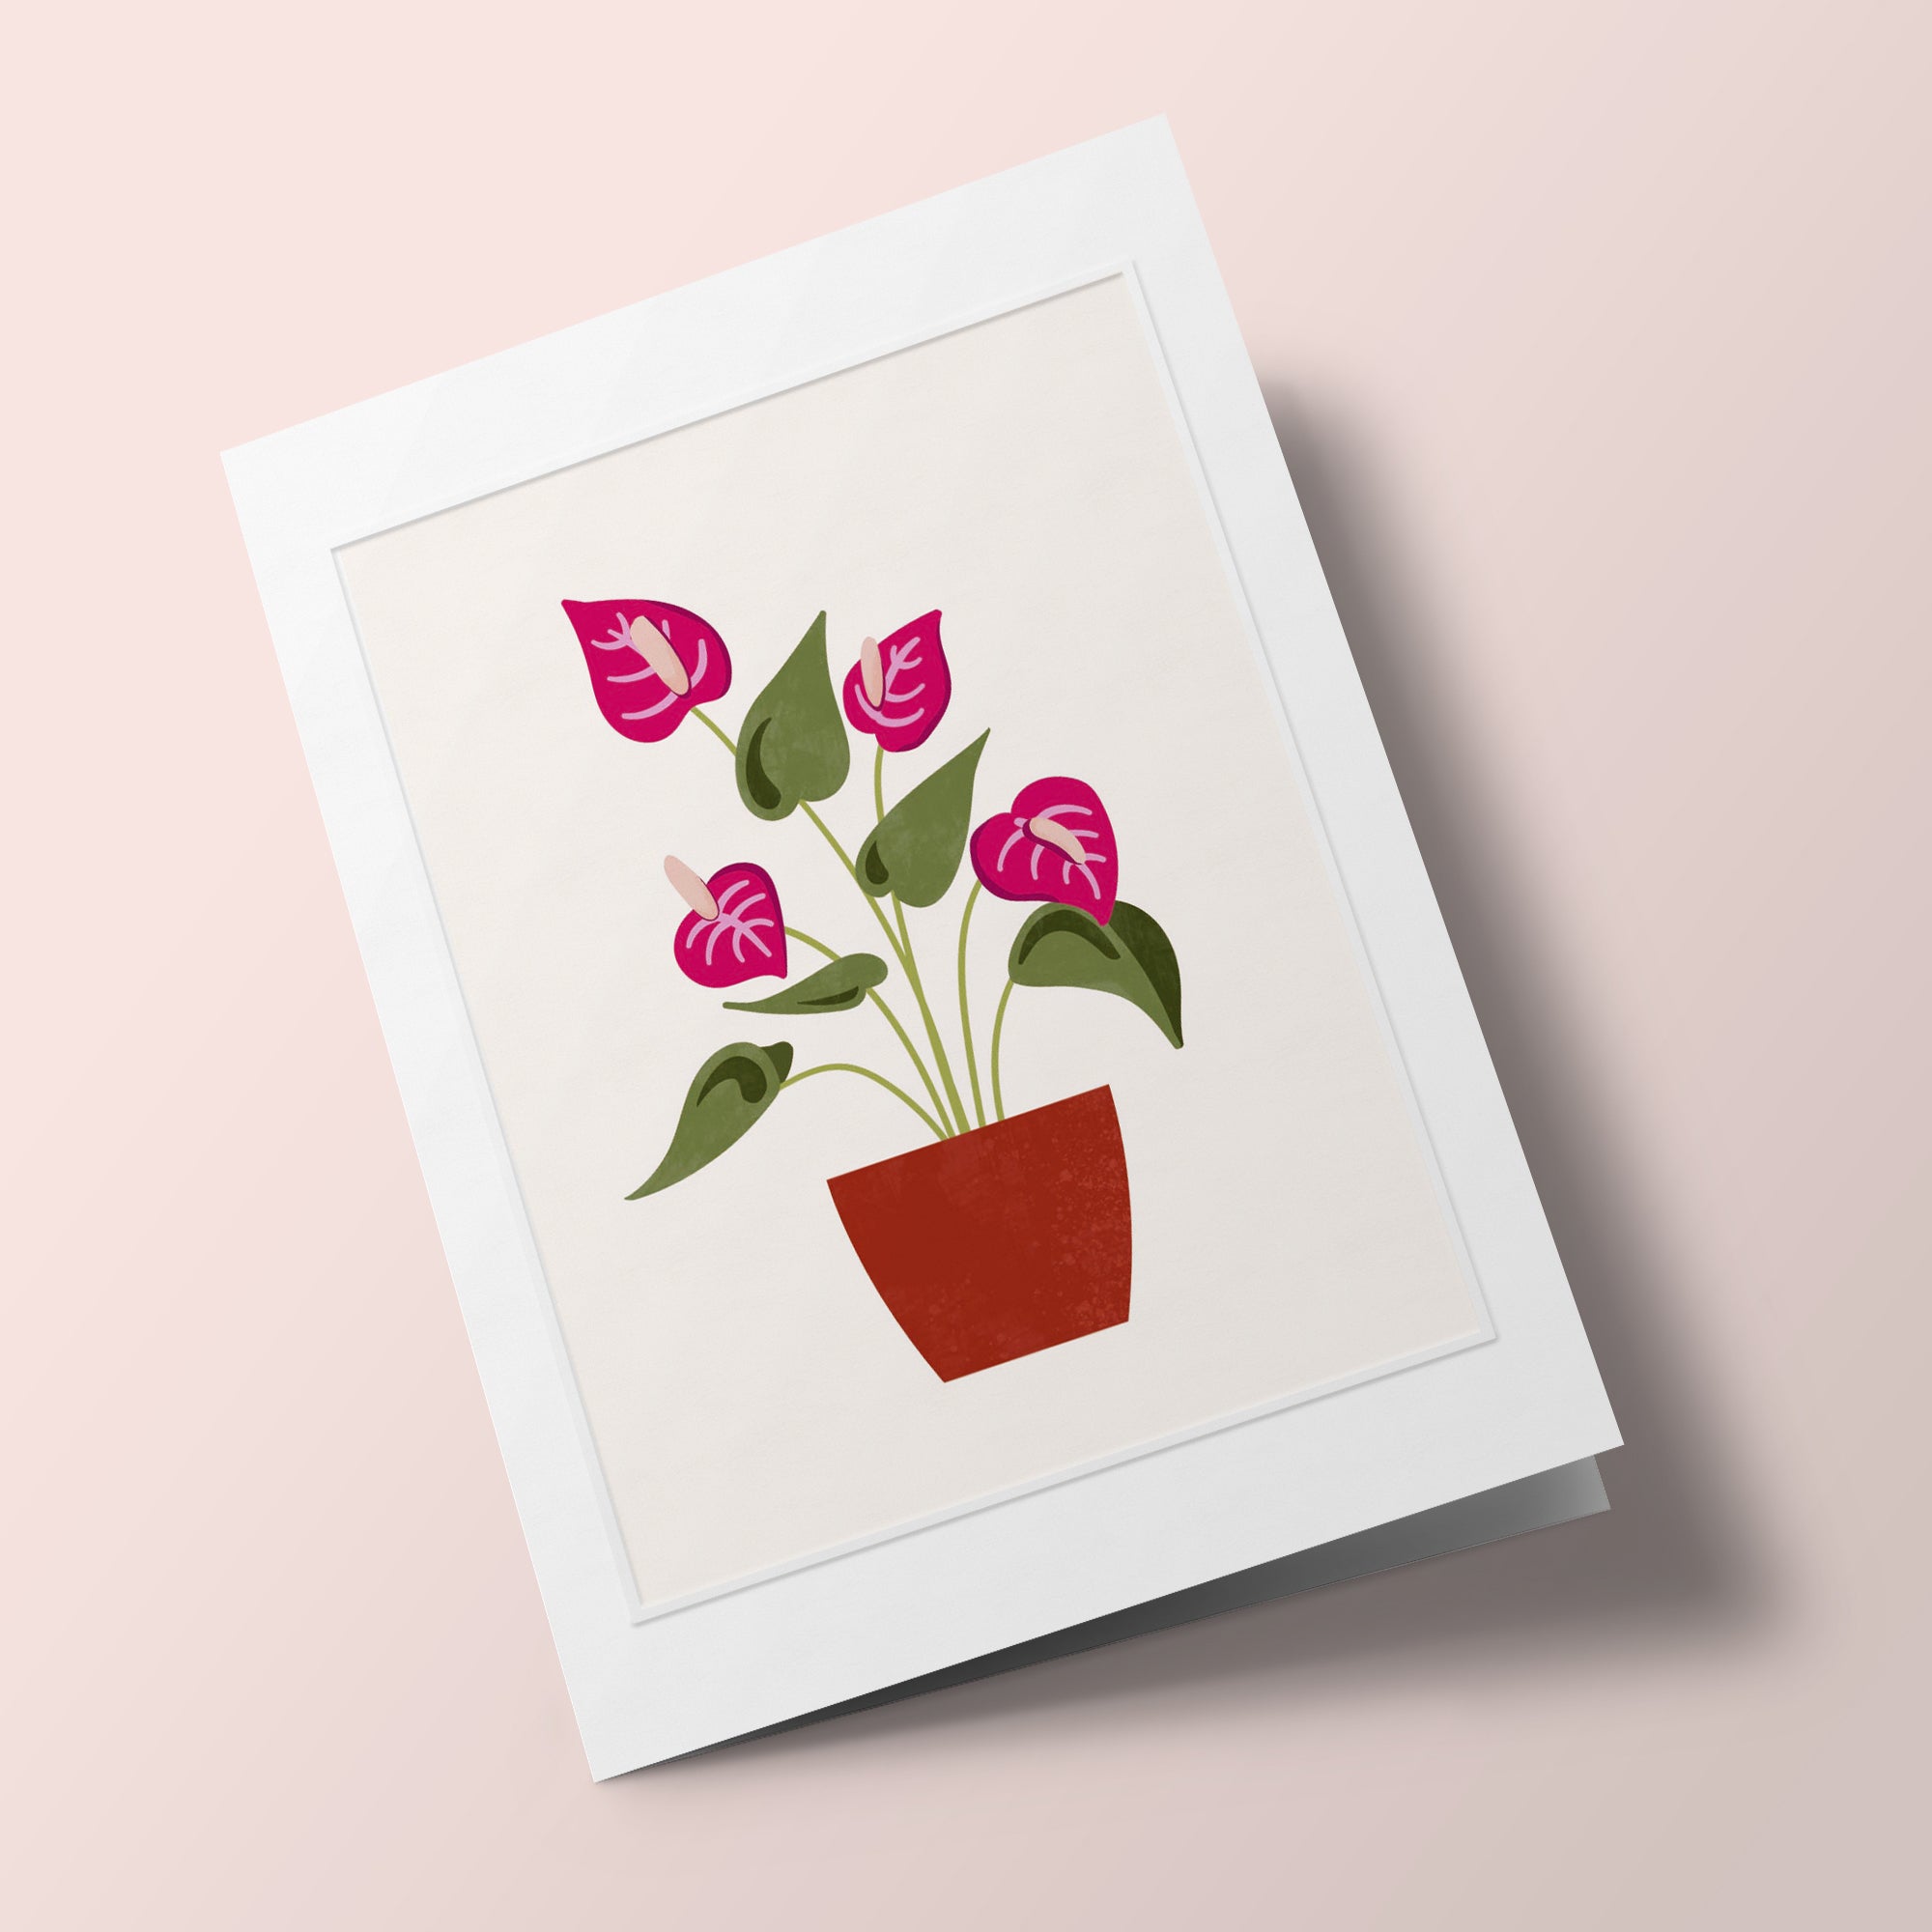 Les Belles Plantes - Anthurium